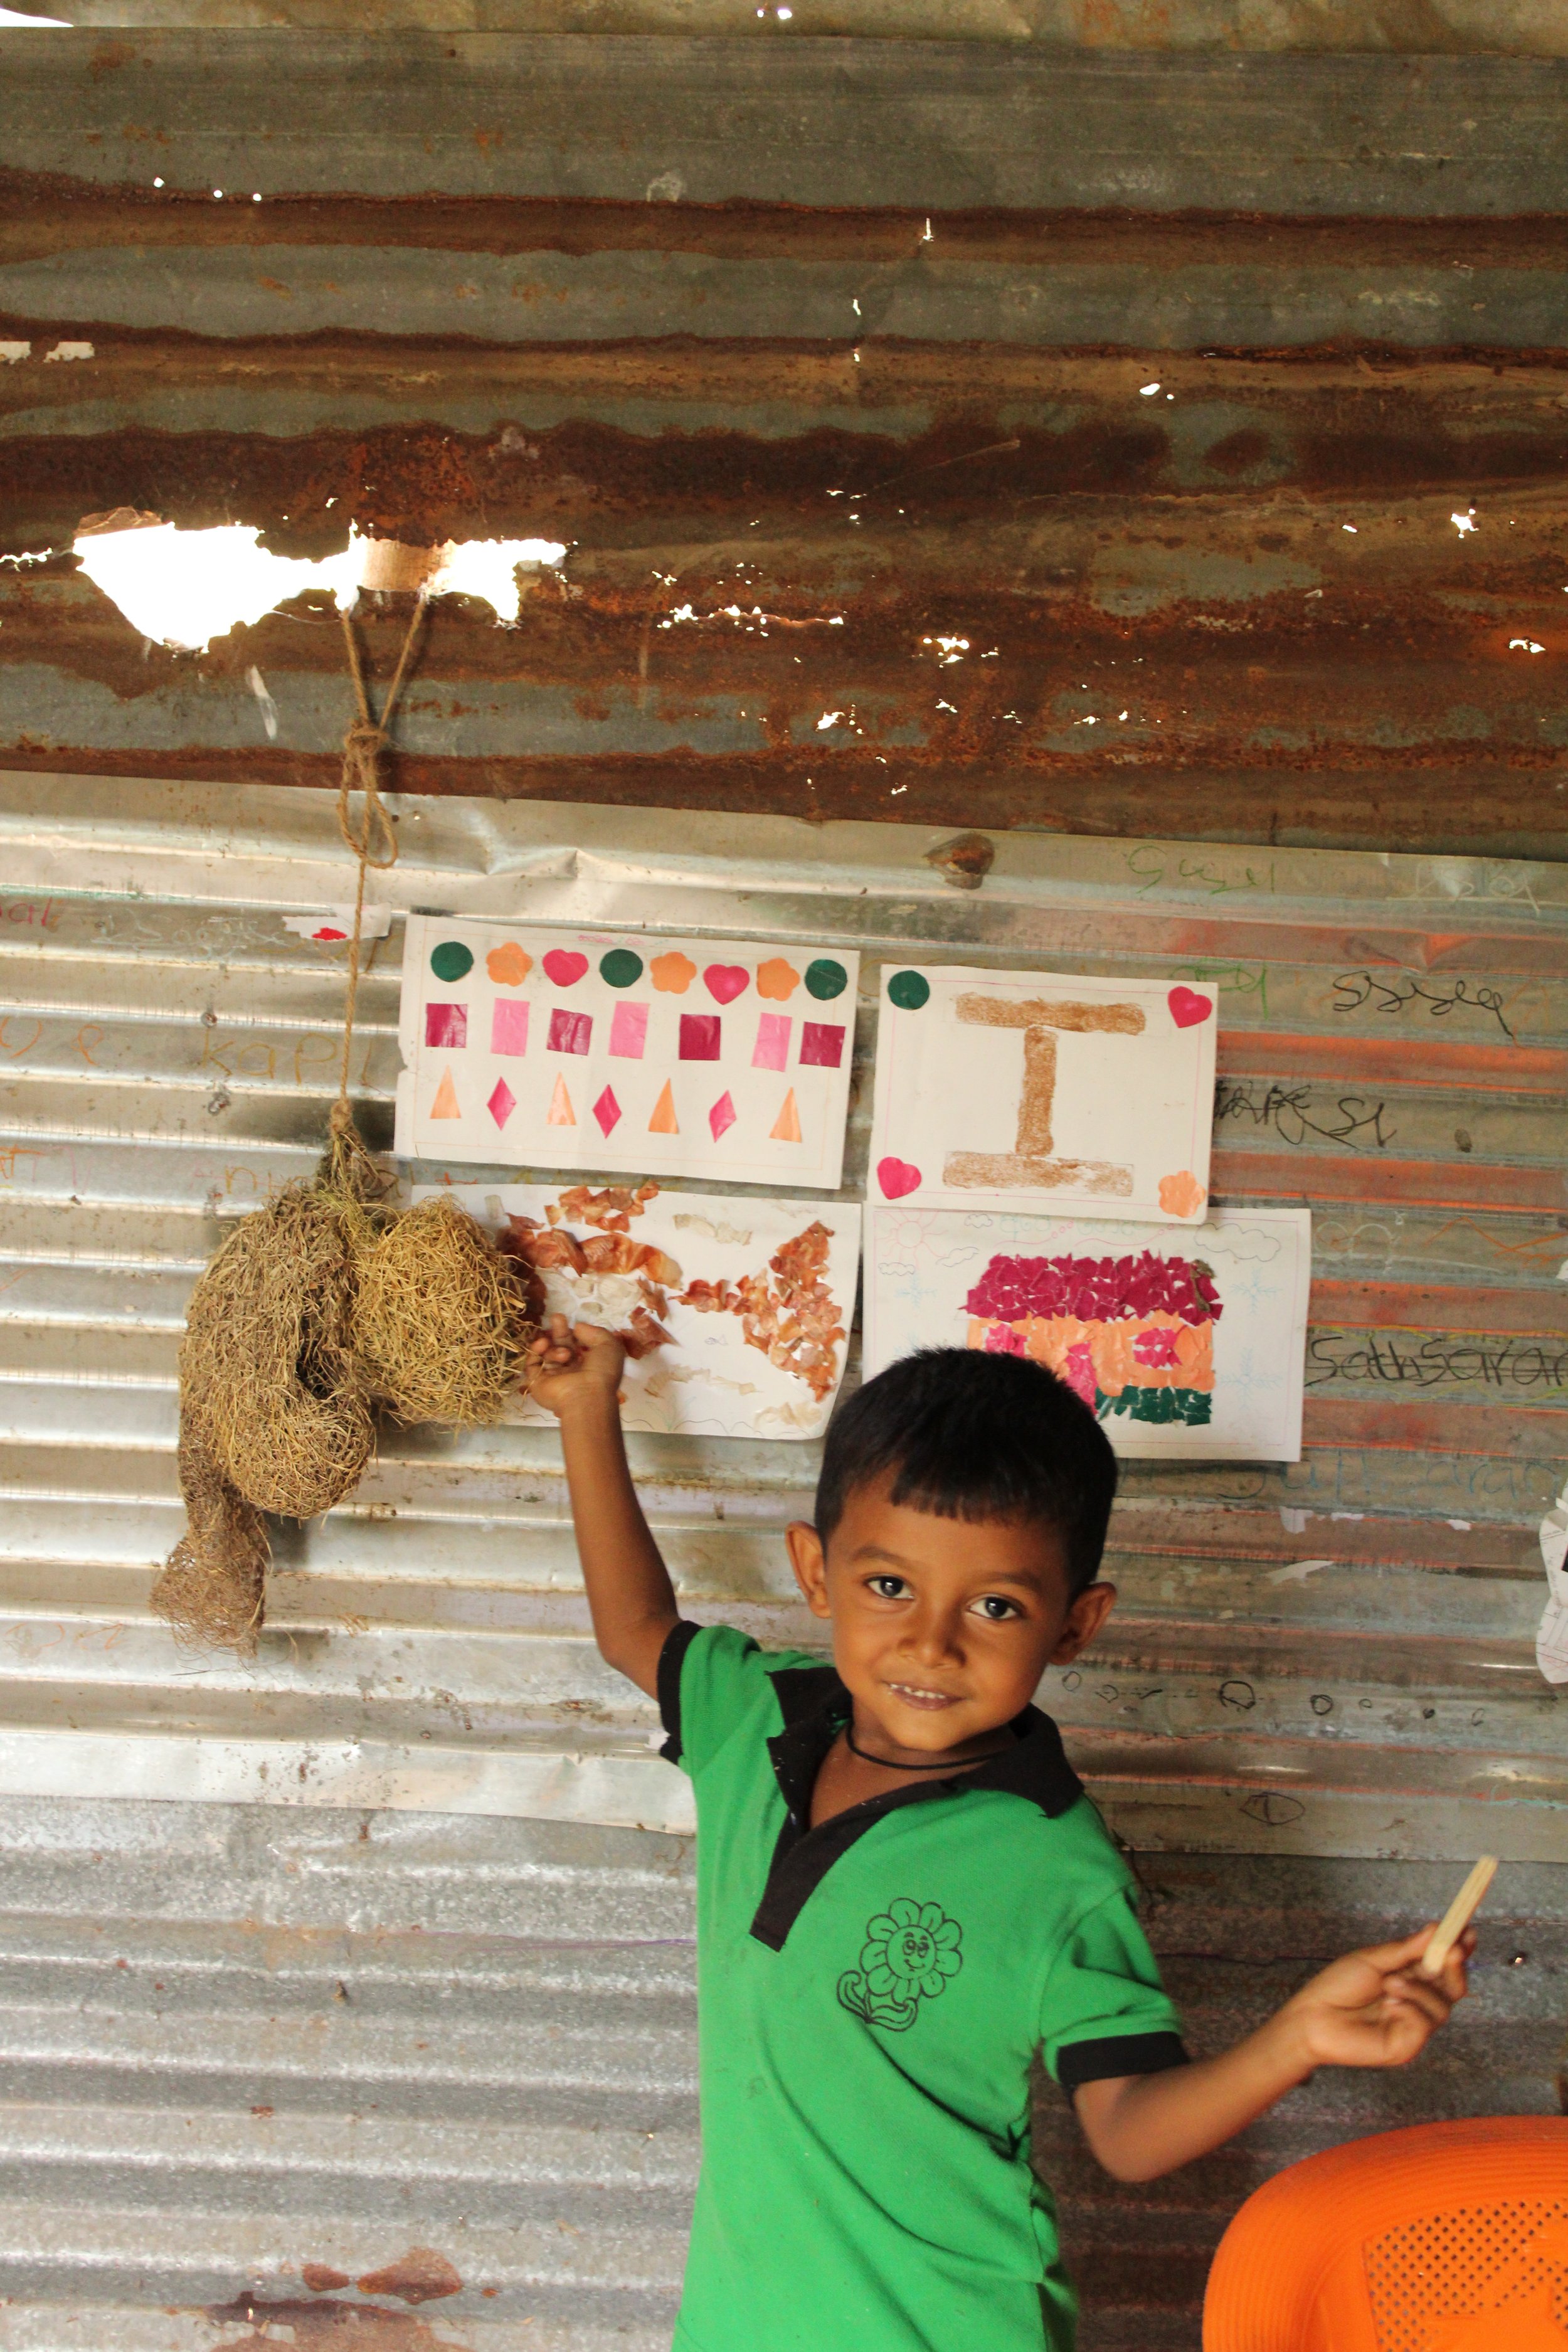  Chamod showing his drawings and crafts. Photo: Madara Gunawardana/World Vision Lanka 